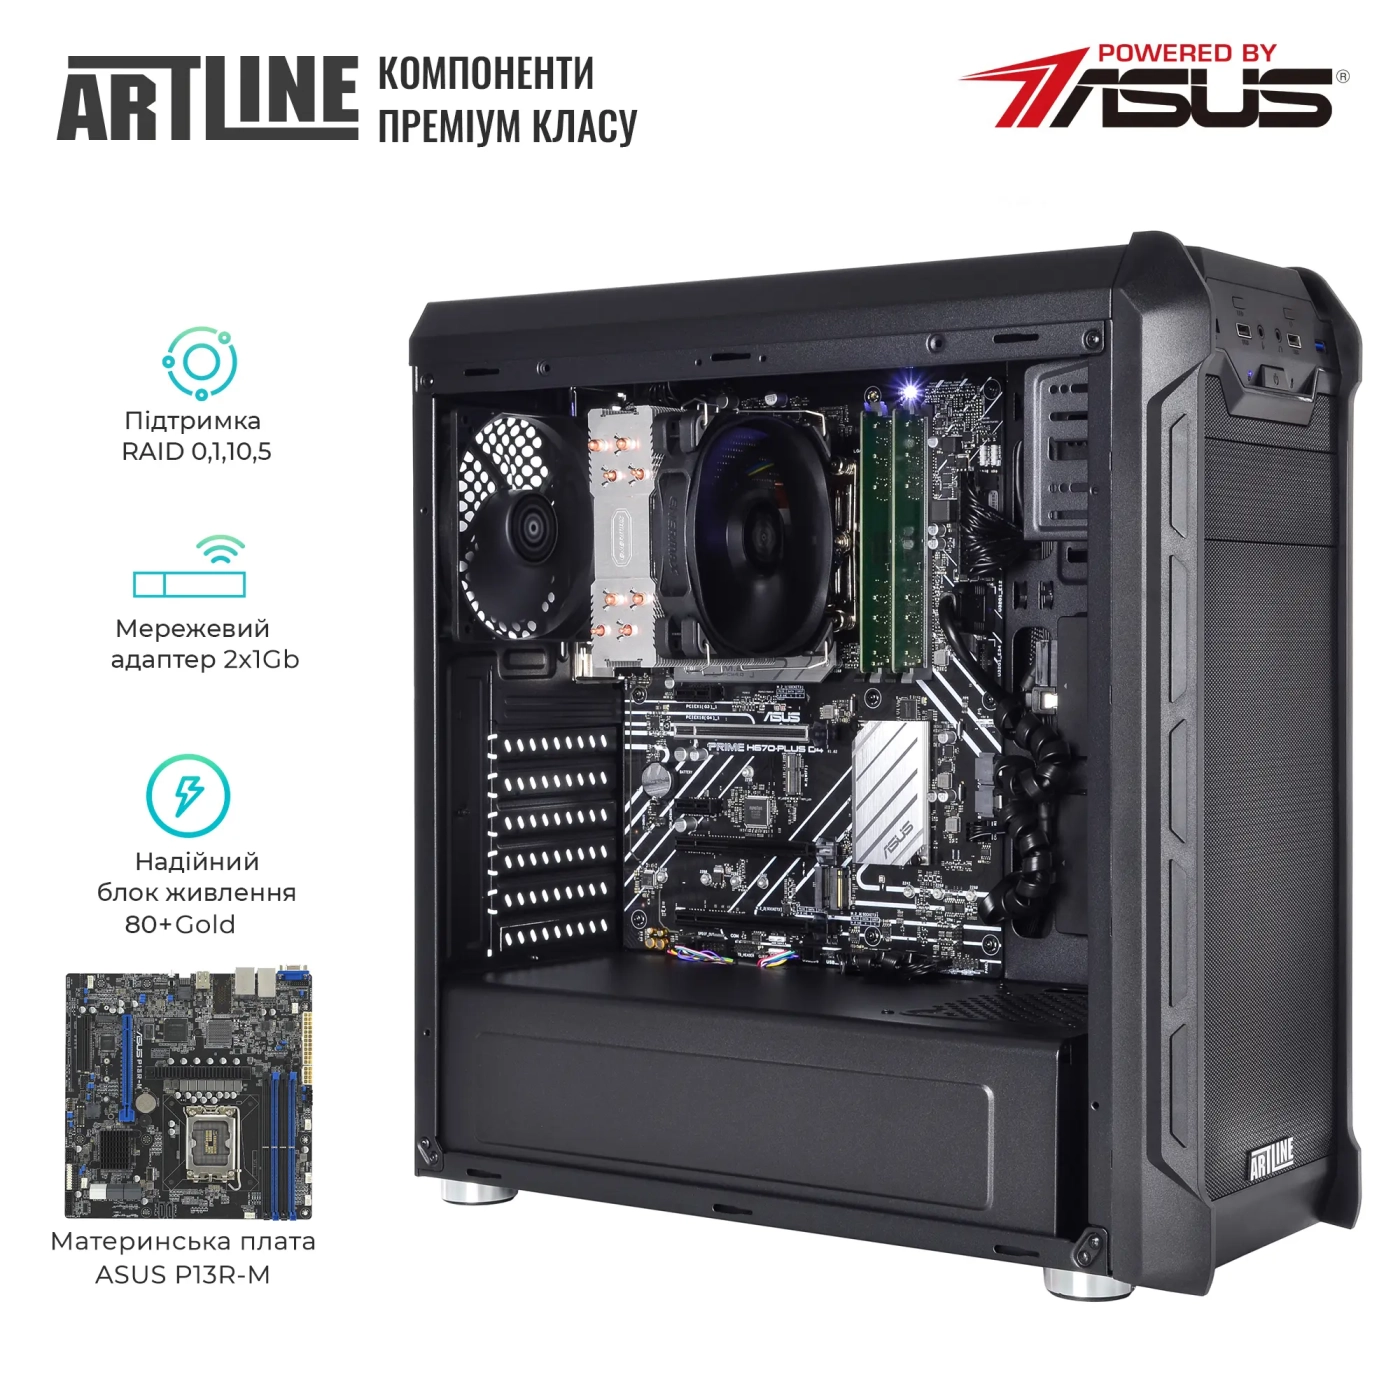 Купить Сервер ARTLINE Business T25 (T25v45) - фото 2